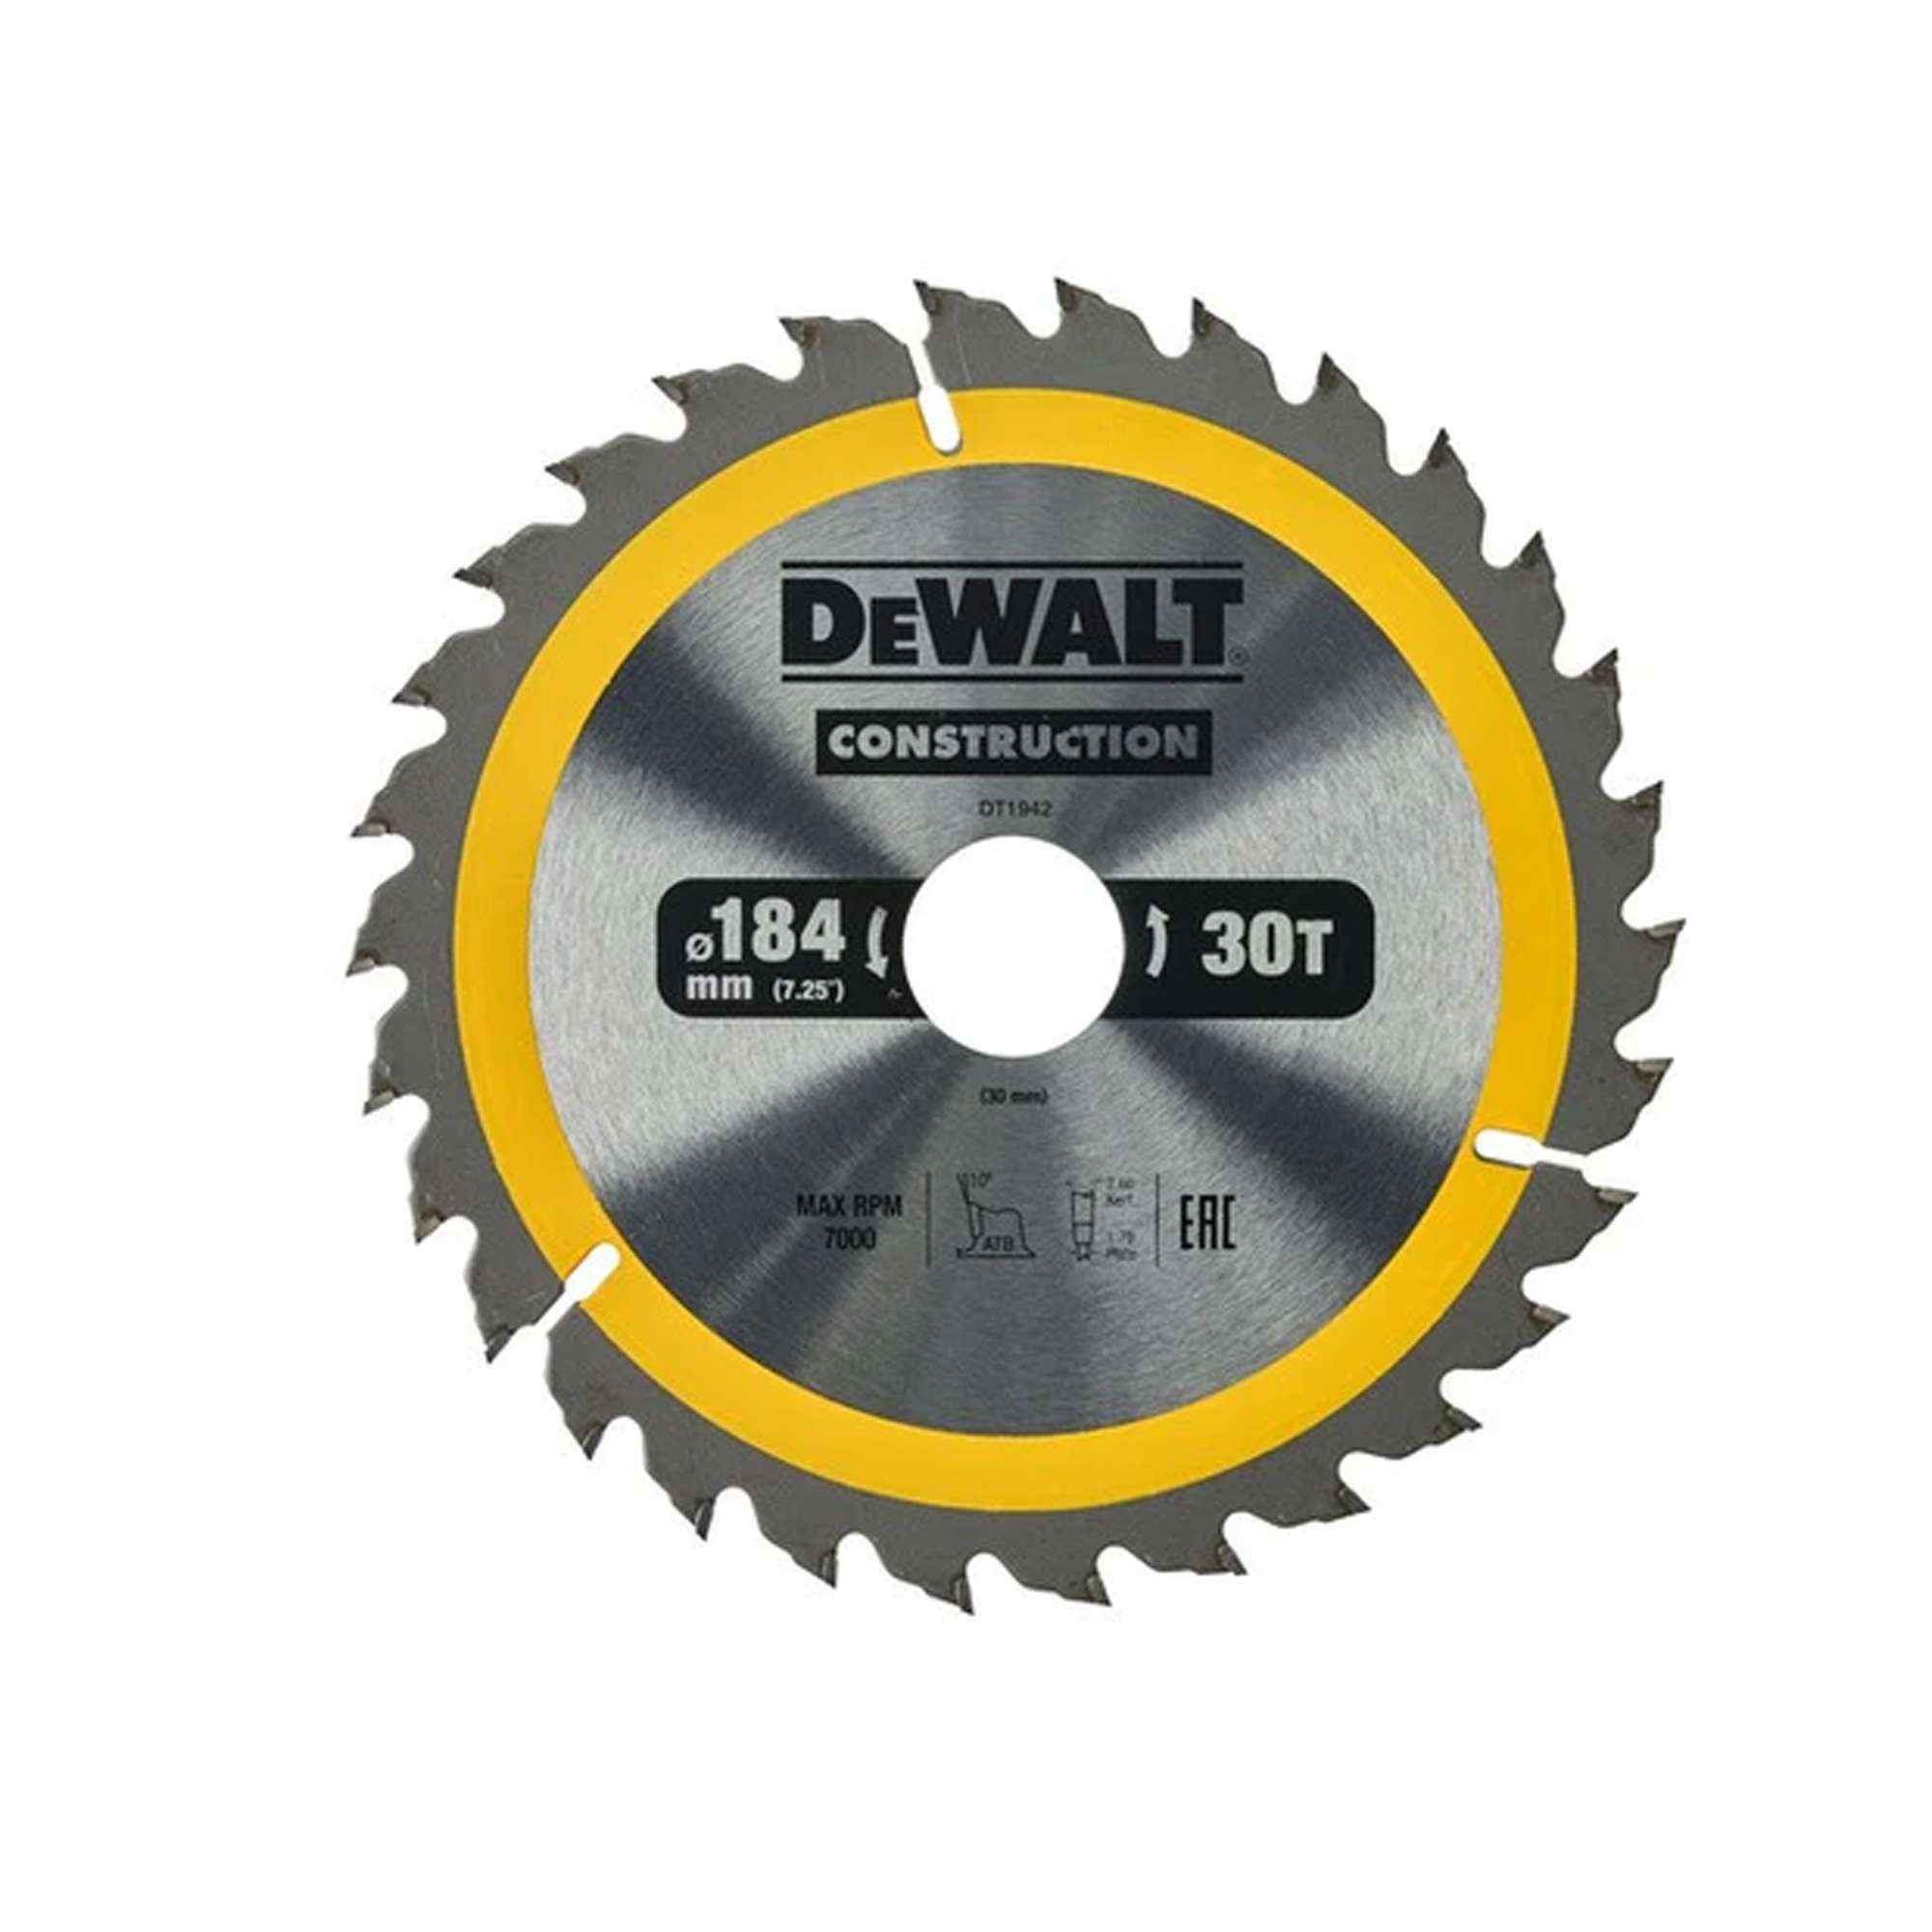 DEWALT DT1942-QZ Portable Circular Saw Blades